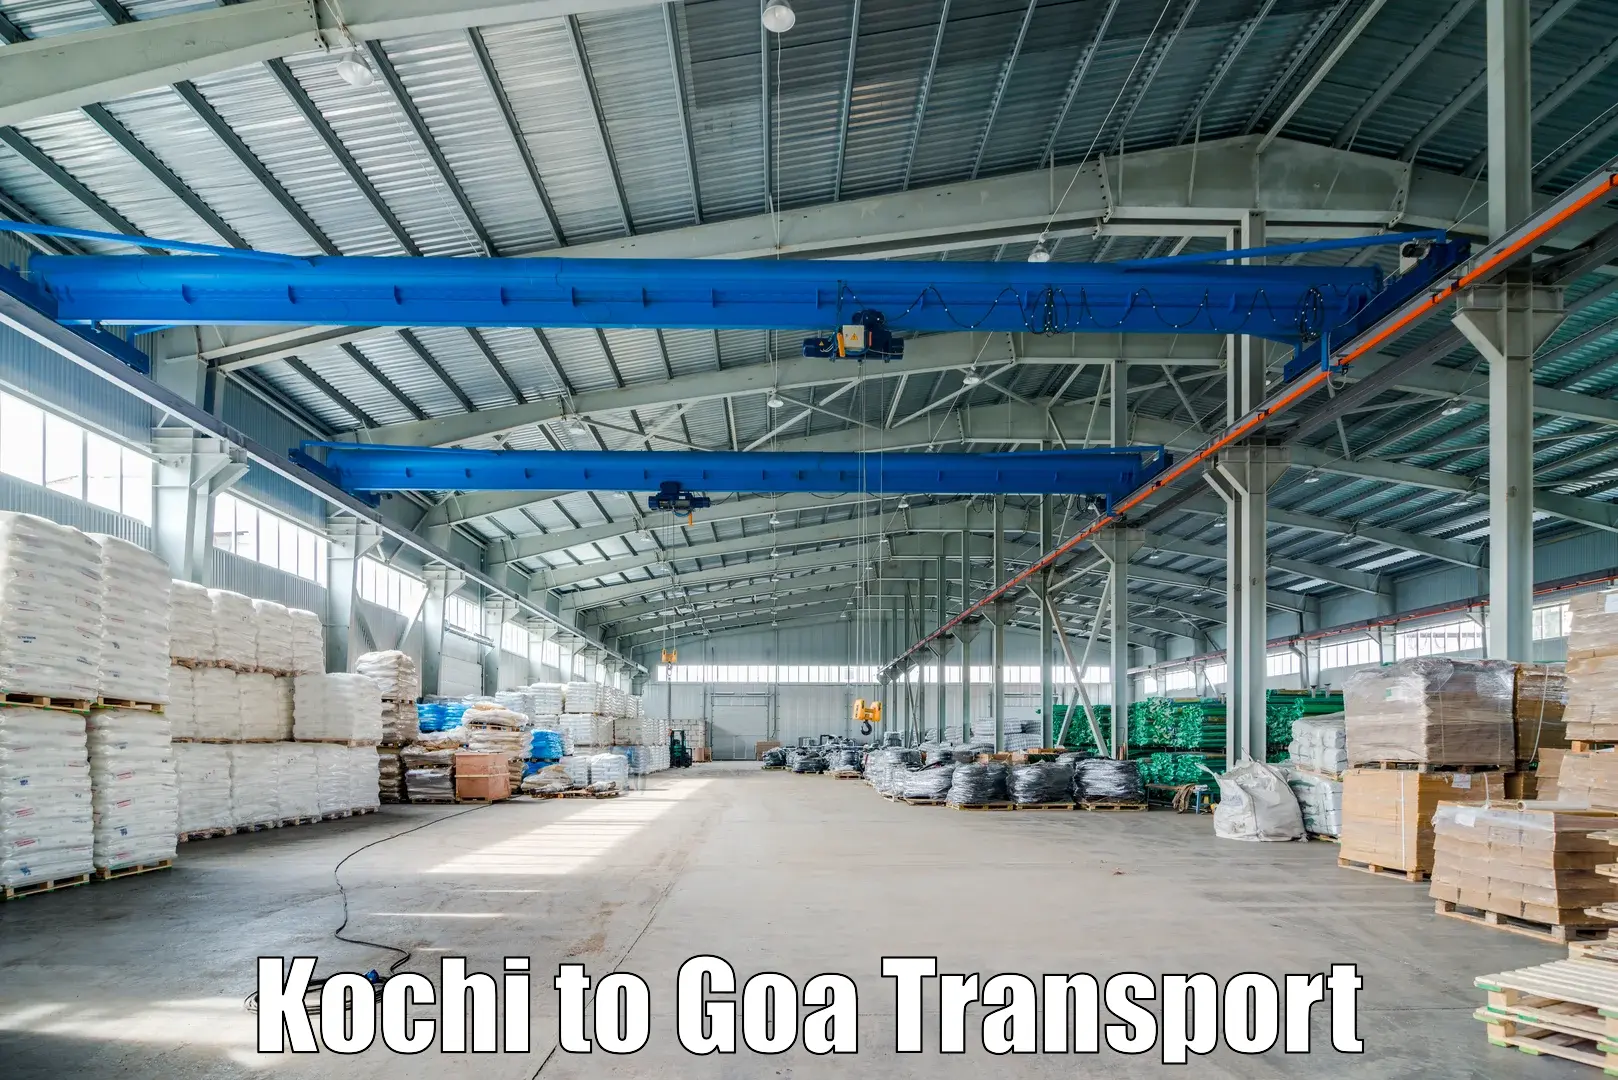 Nearby transport service Kochi to Bicholim